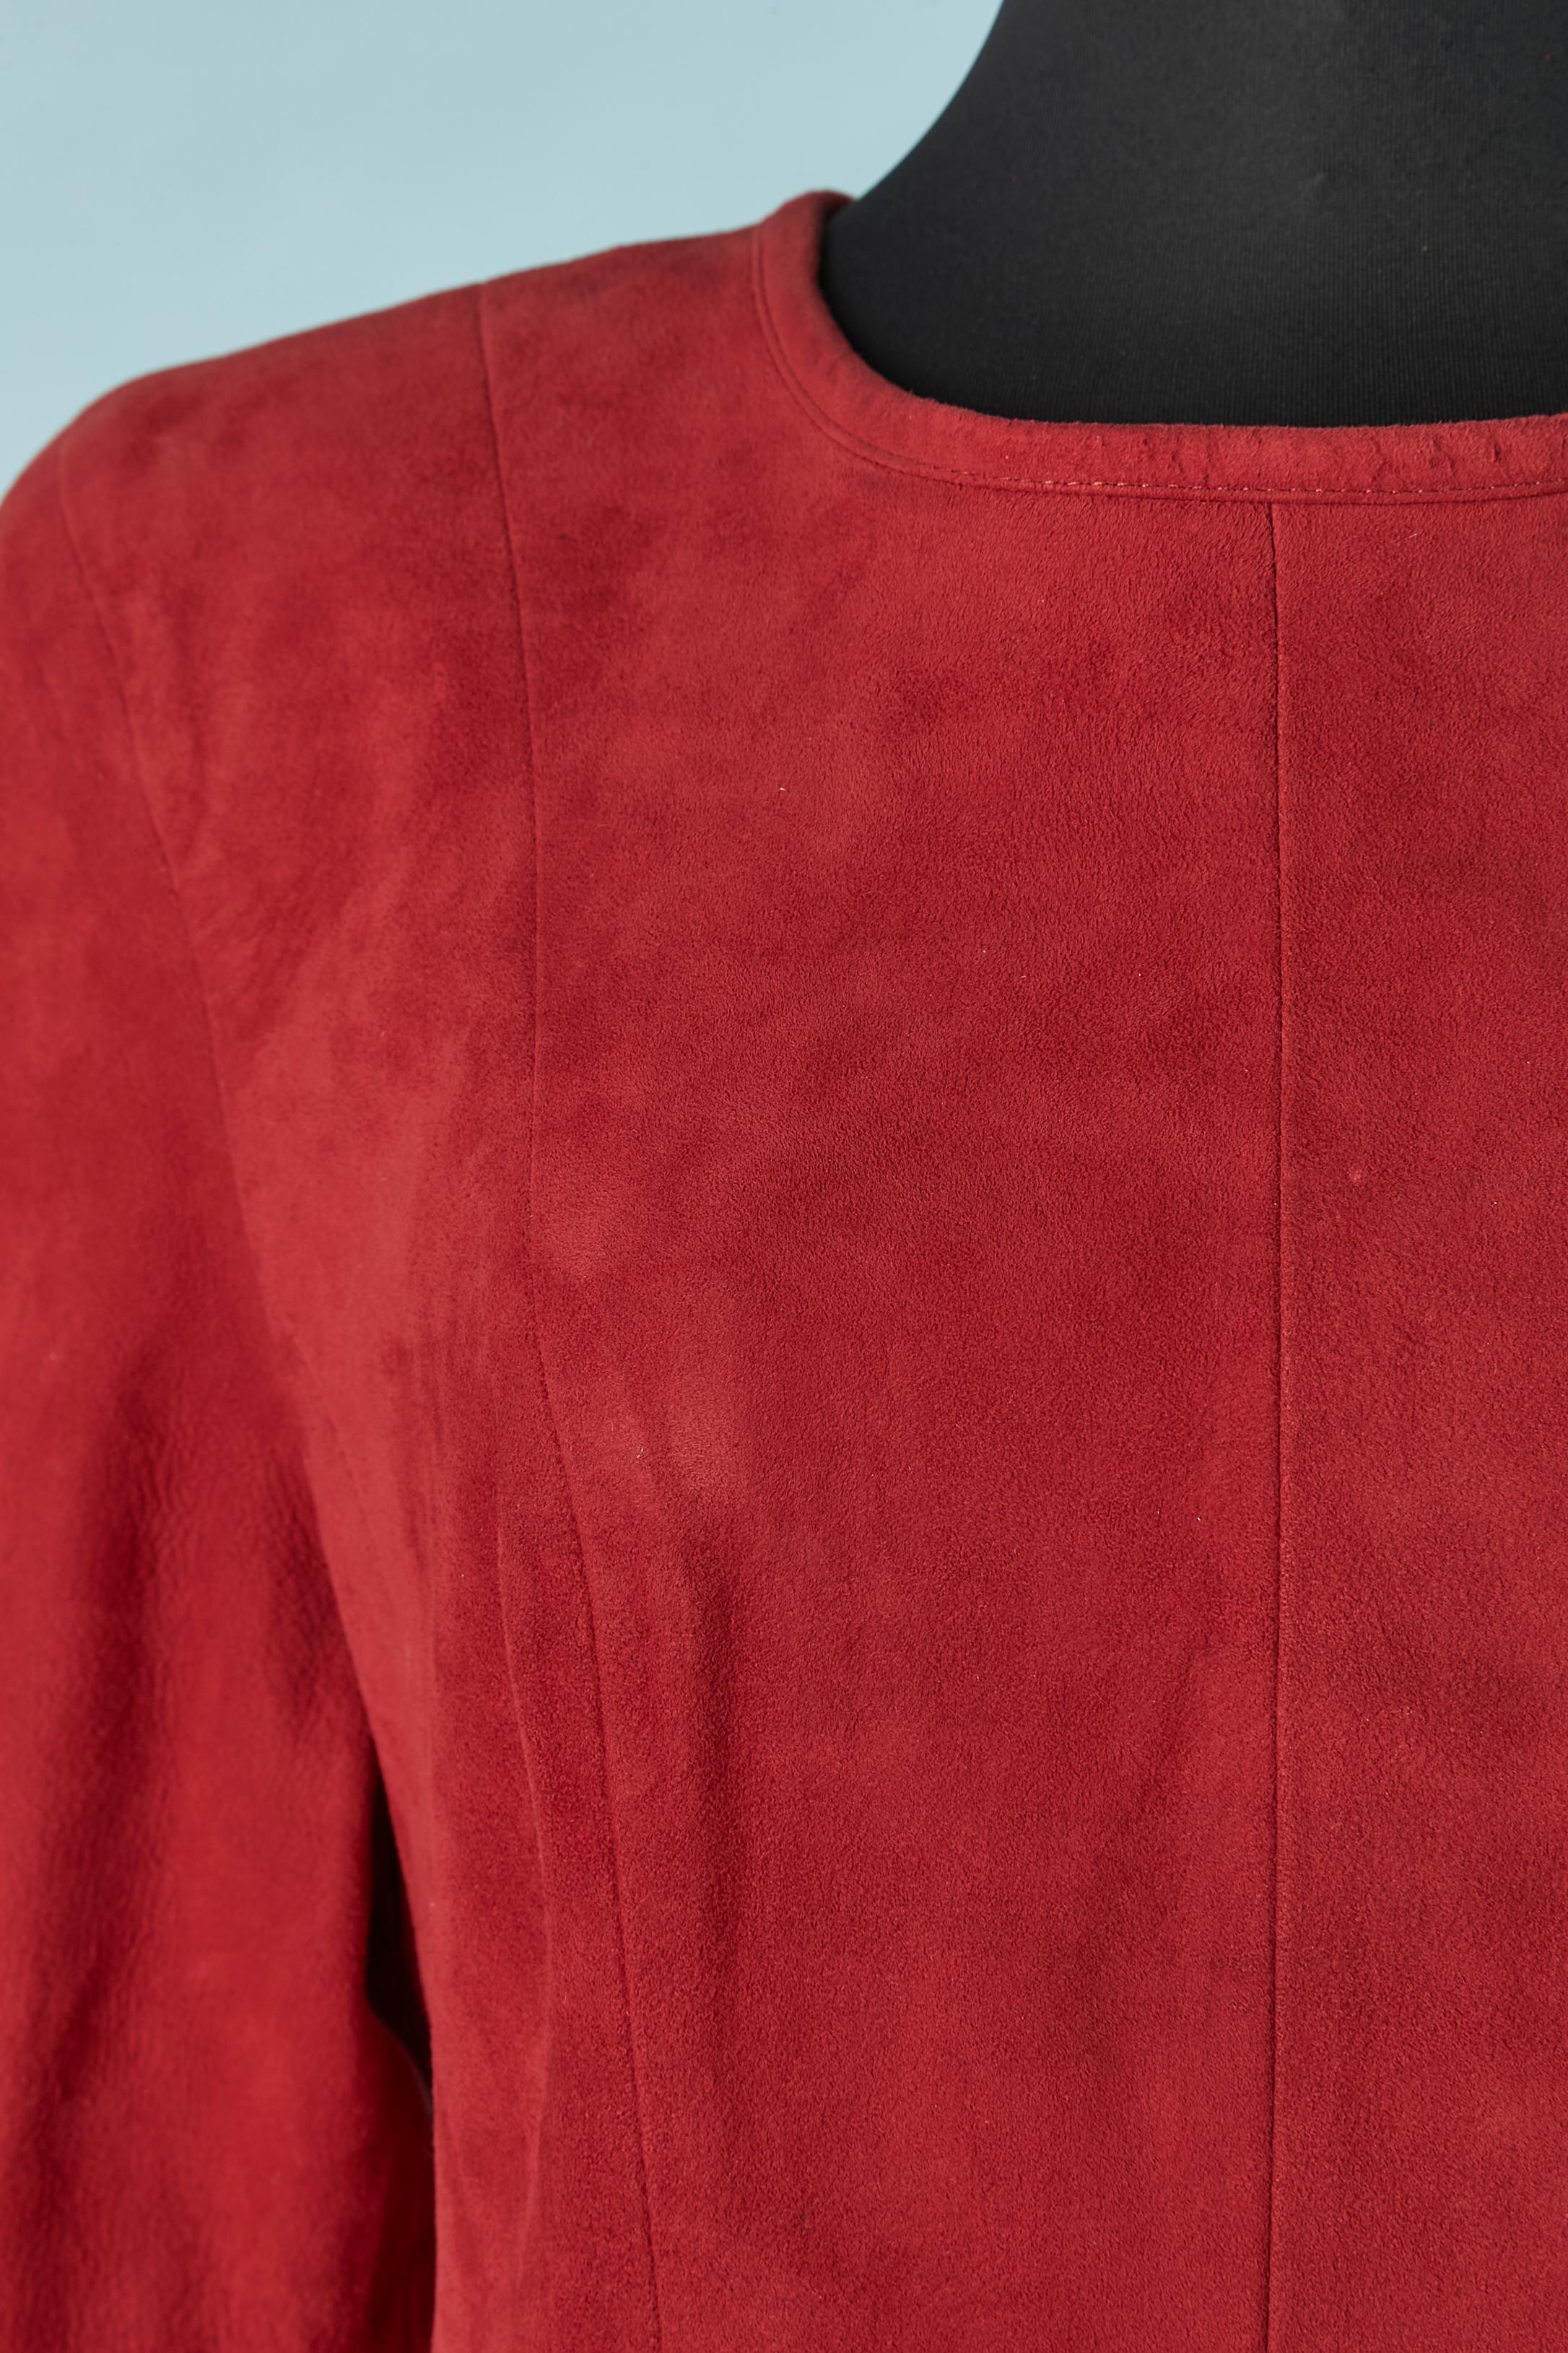 Robe en daim rouge à manches longues et ouverte dans le dos. Le daim est en cuir véritable et la doublure est en rayonne. 
Fermeture à bouton-pression en haut au milieu du dos et fermeture à glissière au milieu du dos. 
TAILLE 7/8 (US) L 